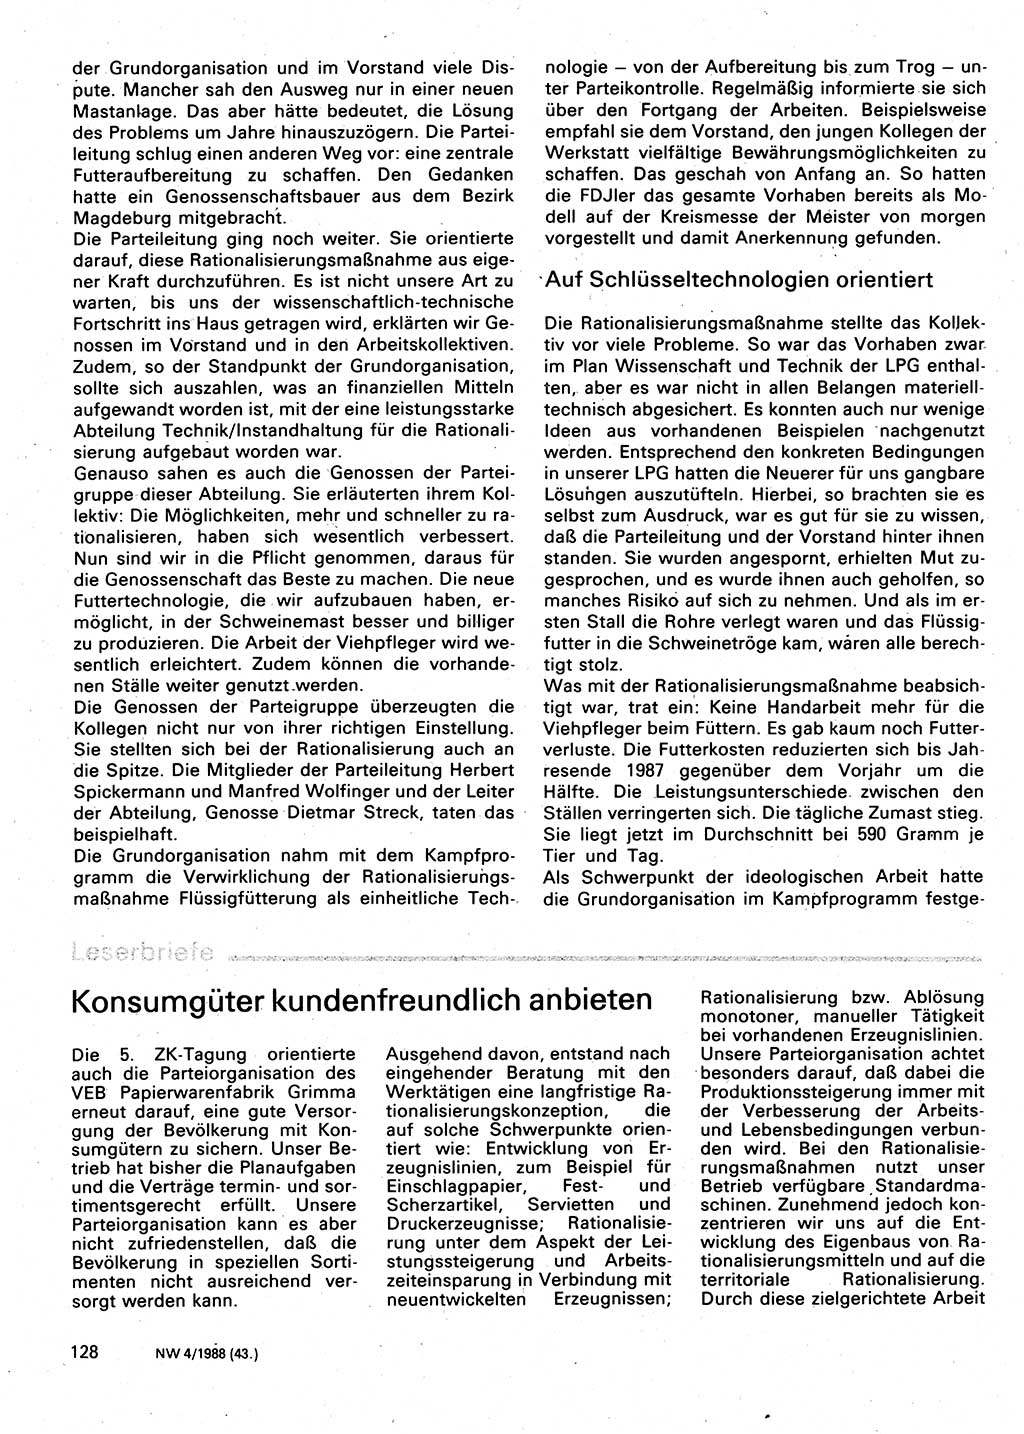 Neuer Weg (NW), Organ des Zentralkomitees (ZK) der SED (Sozialistische Einheitspartei Deutschlands) für Fragen des Parteilebens, 43. Jahrgang [Deutsche Demokratische Republik (DDR)] 1988, Seite 128 (NW ZK SED DDR 1988, S. 128)